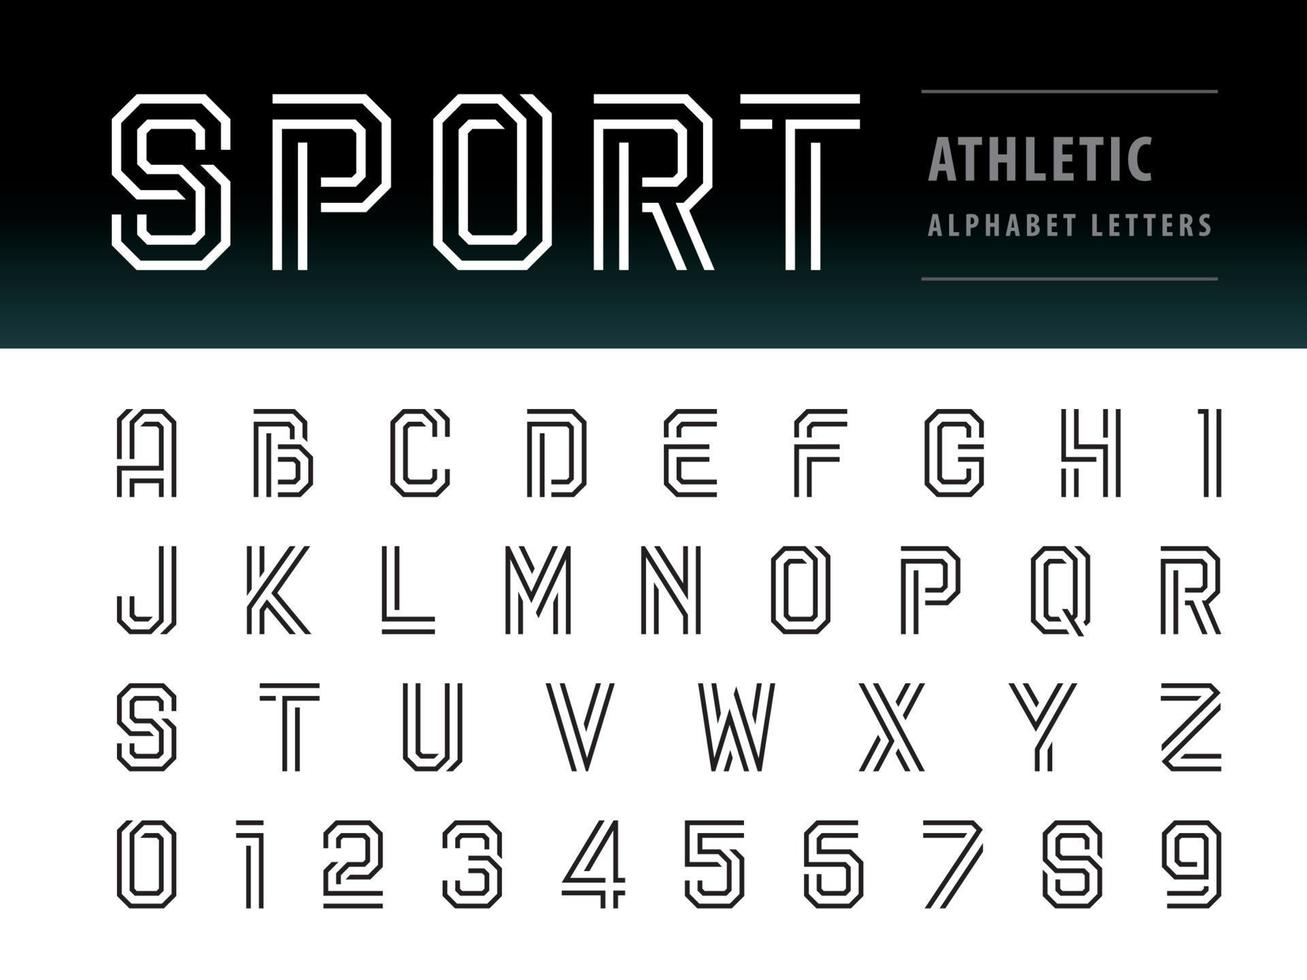 moderne athletische alphabetbuchstaben und zahlen, leichte buchstabenschrift für technologie, sport, mode, futuristische zukunft vektor